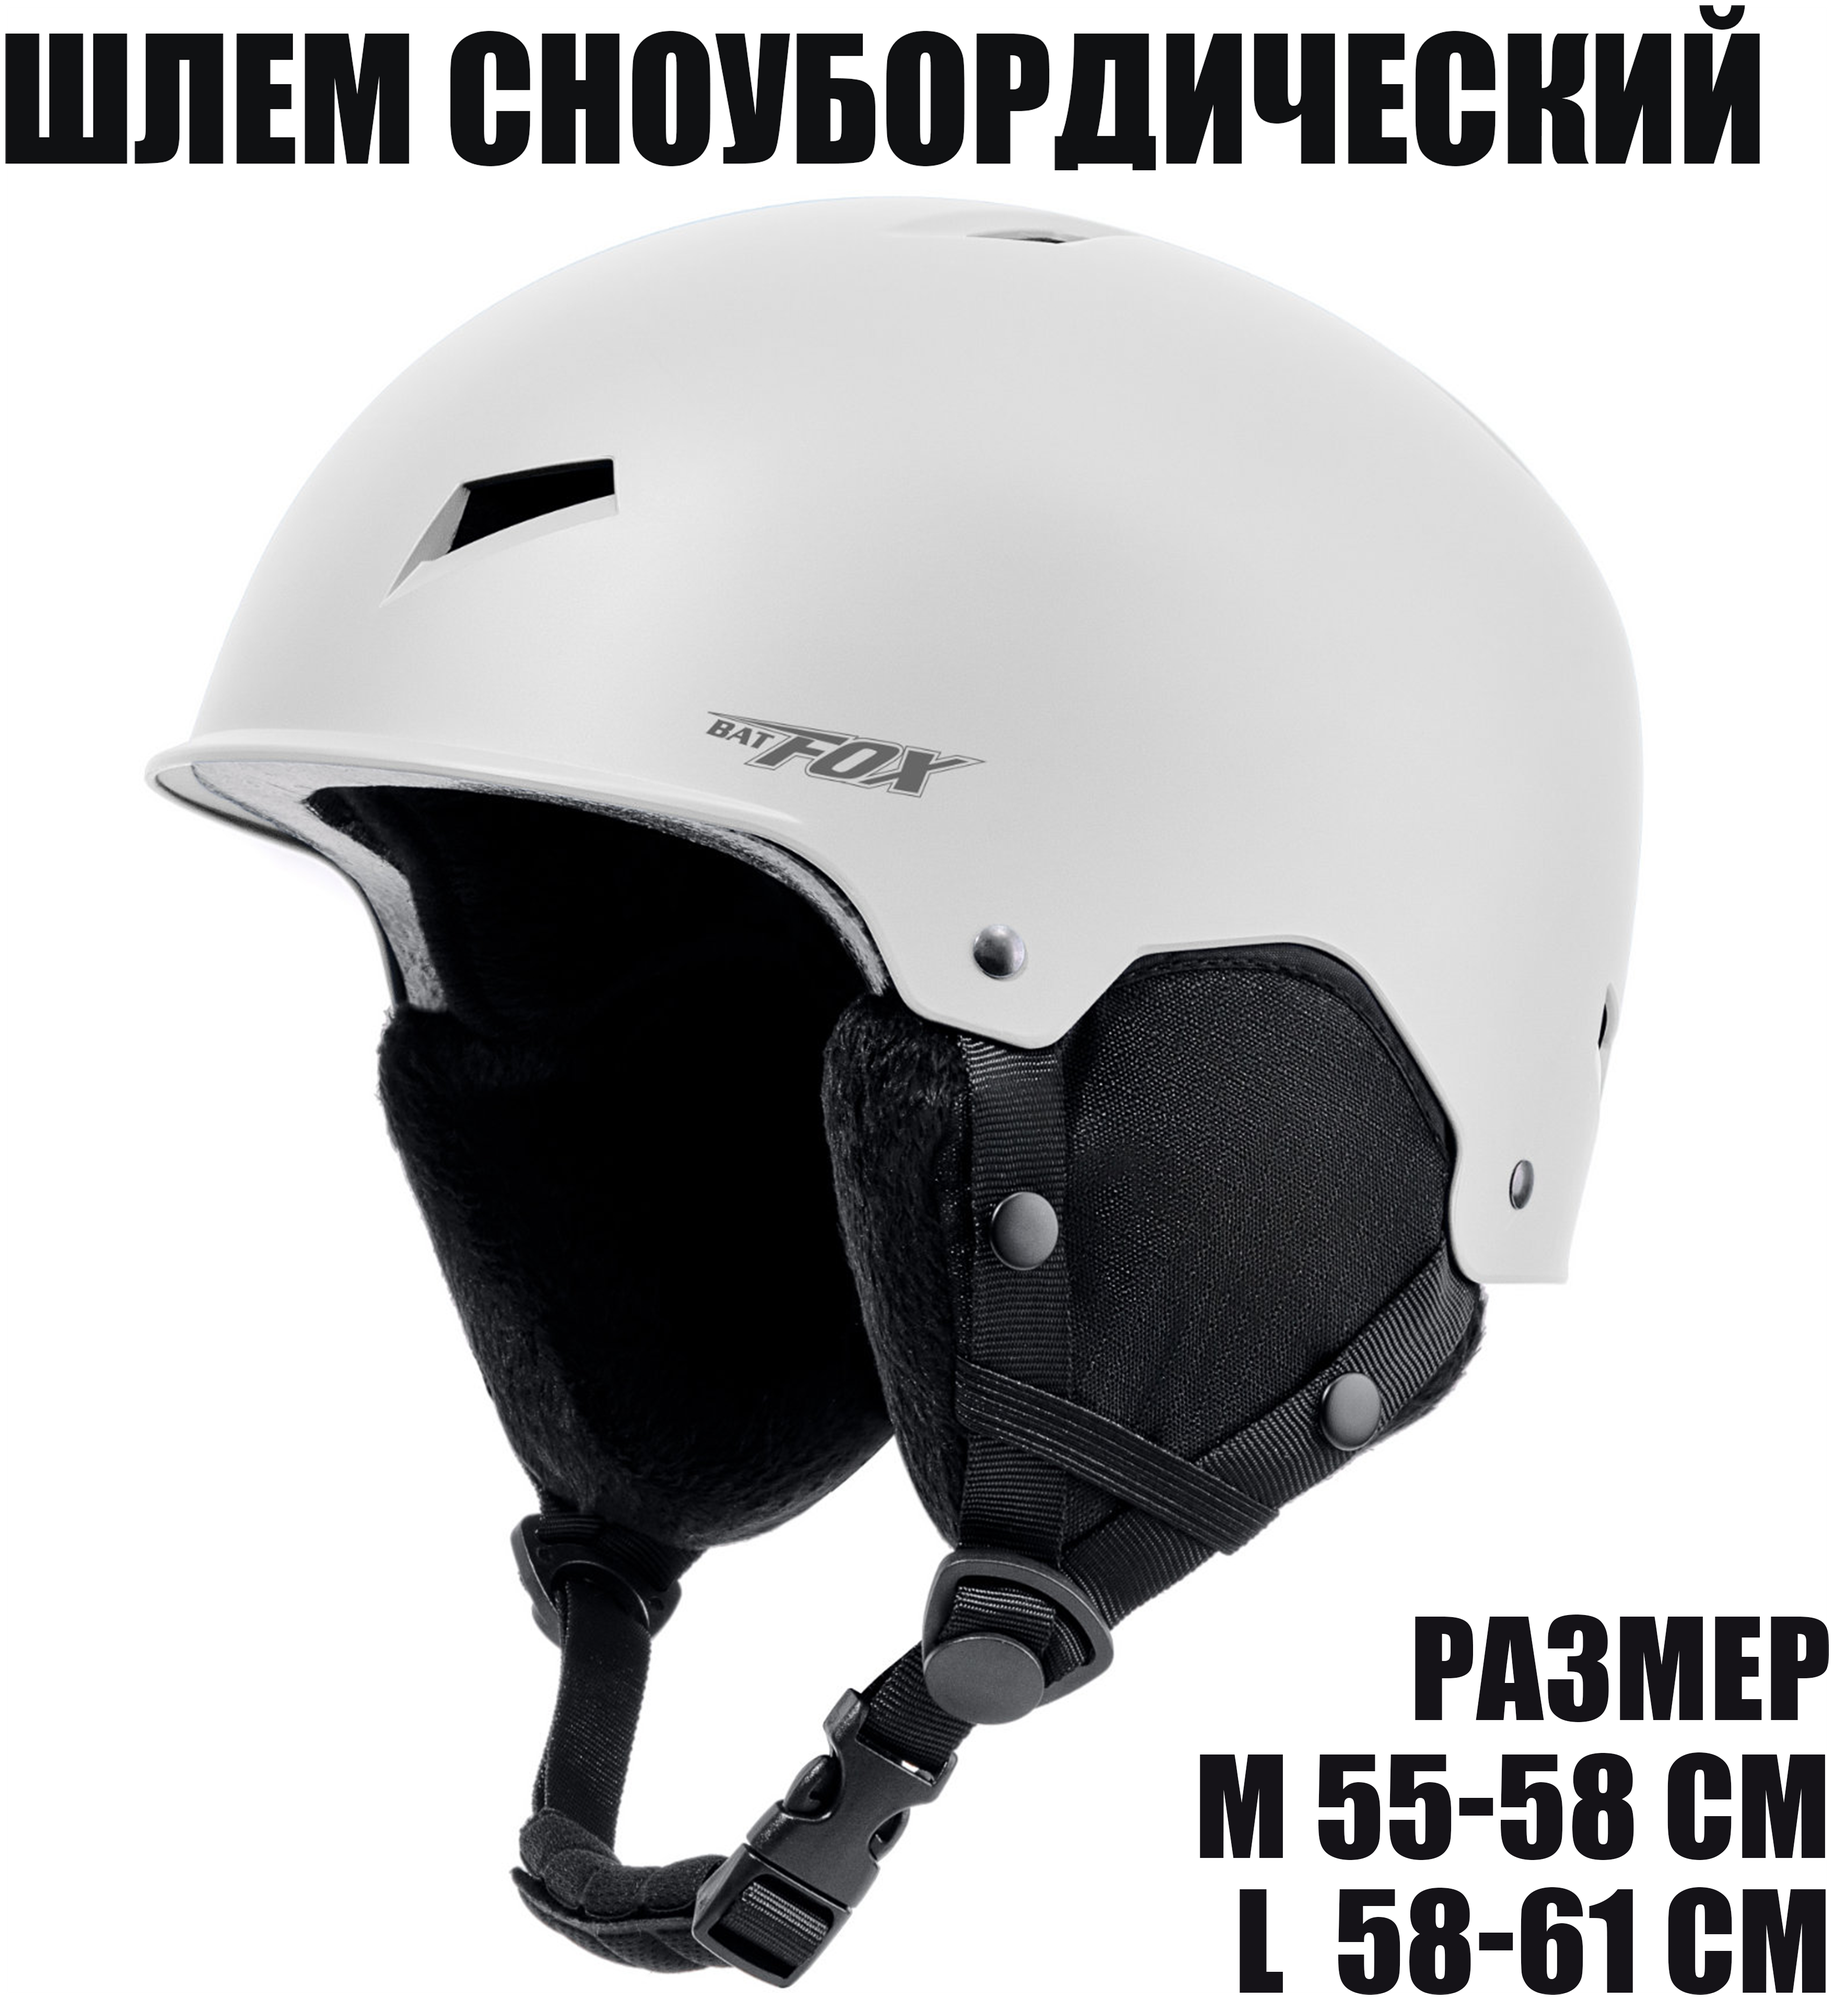 Горнолыжный сноубордический шлем BatFox, размер L (58 - 61 см), белый цвет